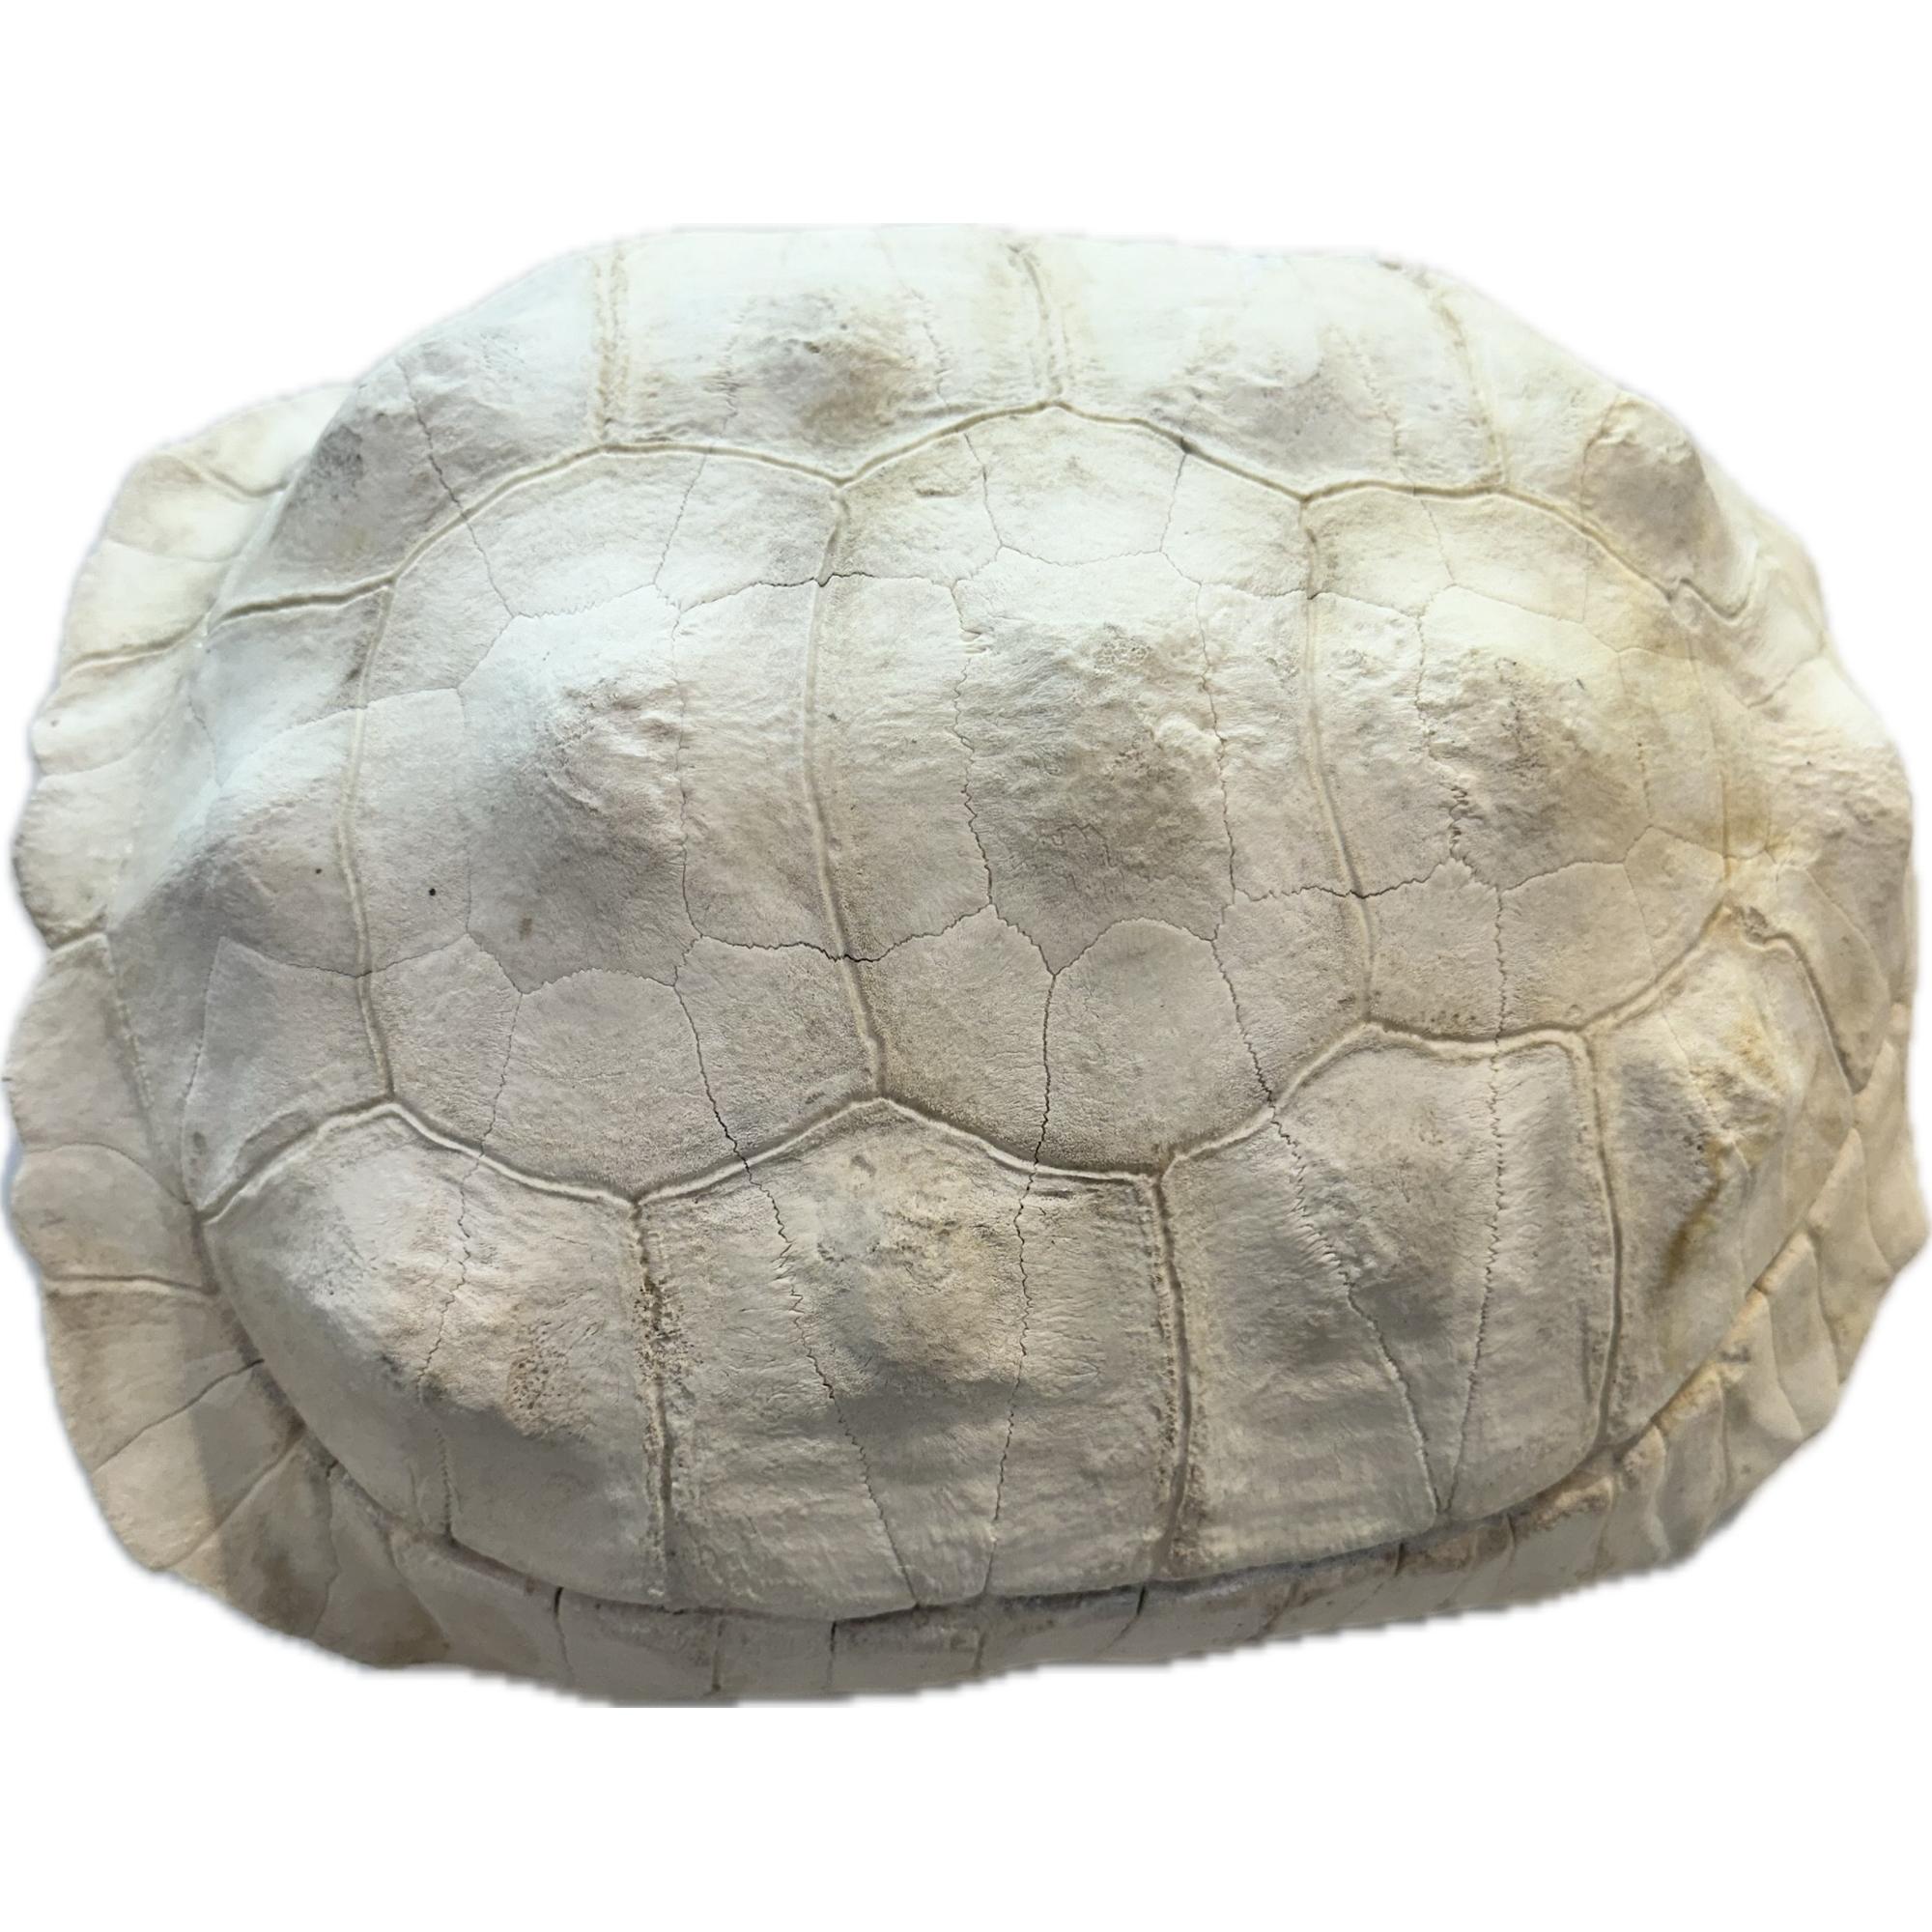 Sulcata shell, Tortoise, Africa, 12 1/2 long specimen Prehistoric Online